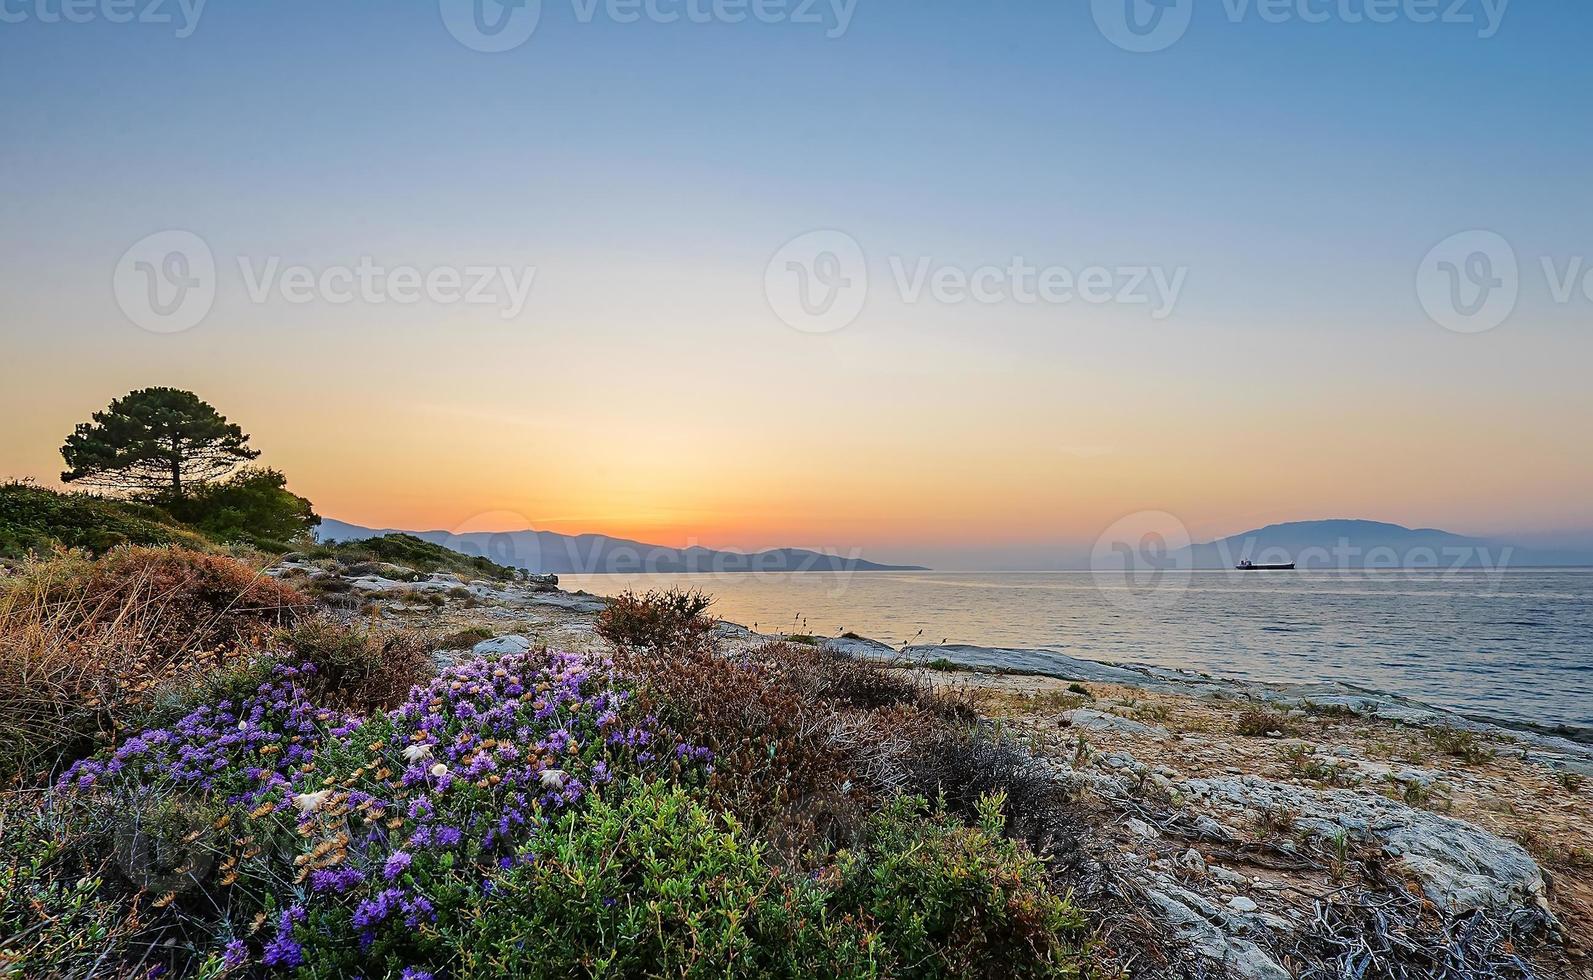 en matta av blomning blommor och sparsamhet på klippor av tropisk vild strand med ensam träd och båt. solnedgång se i zakynthos ö, grekland foto